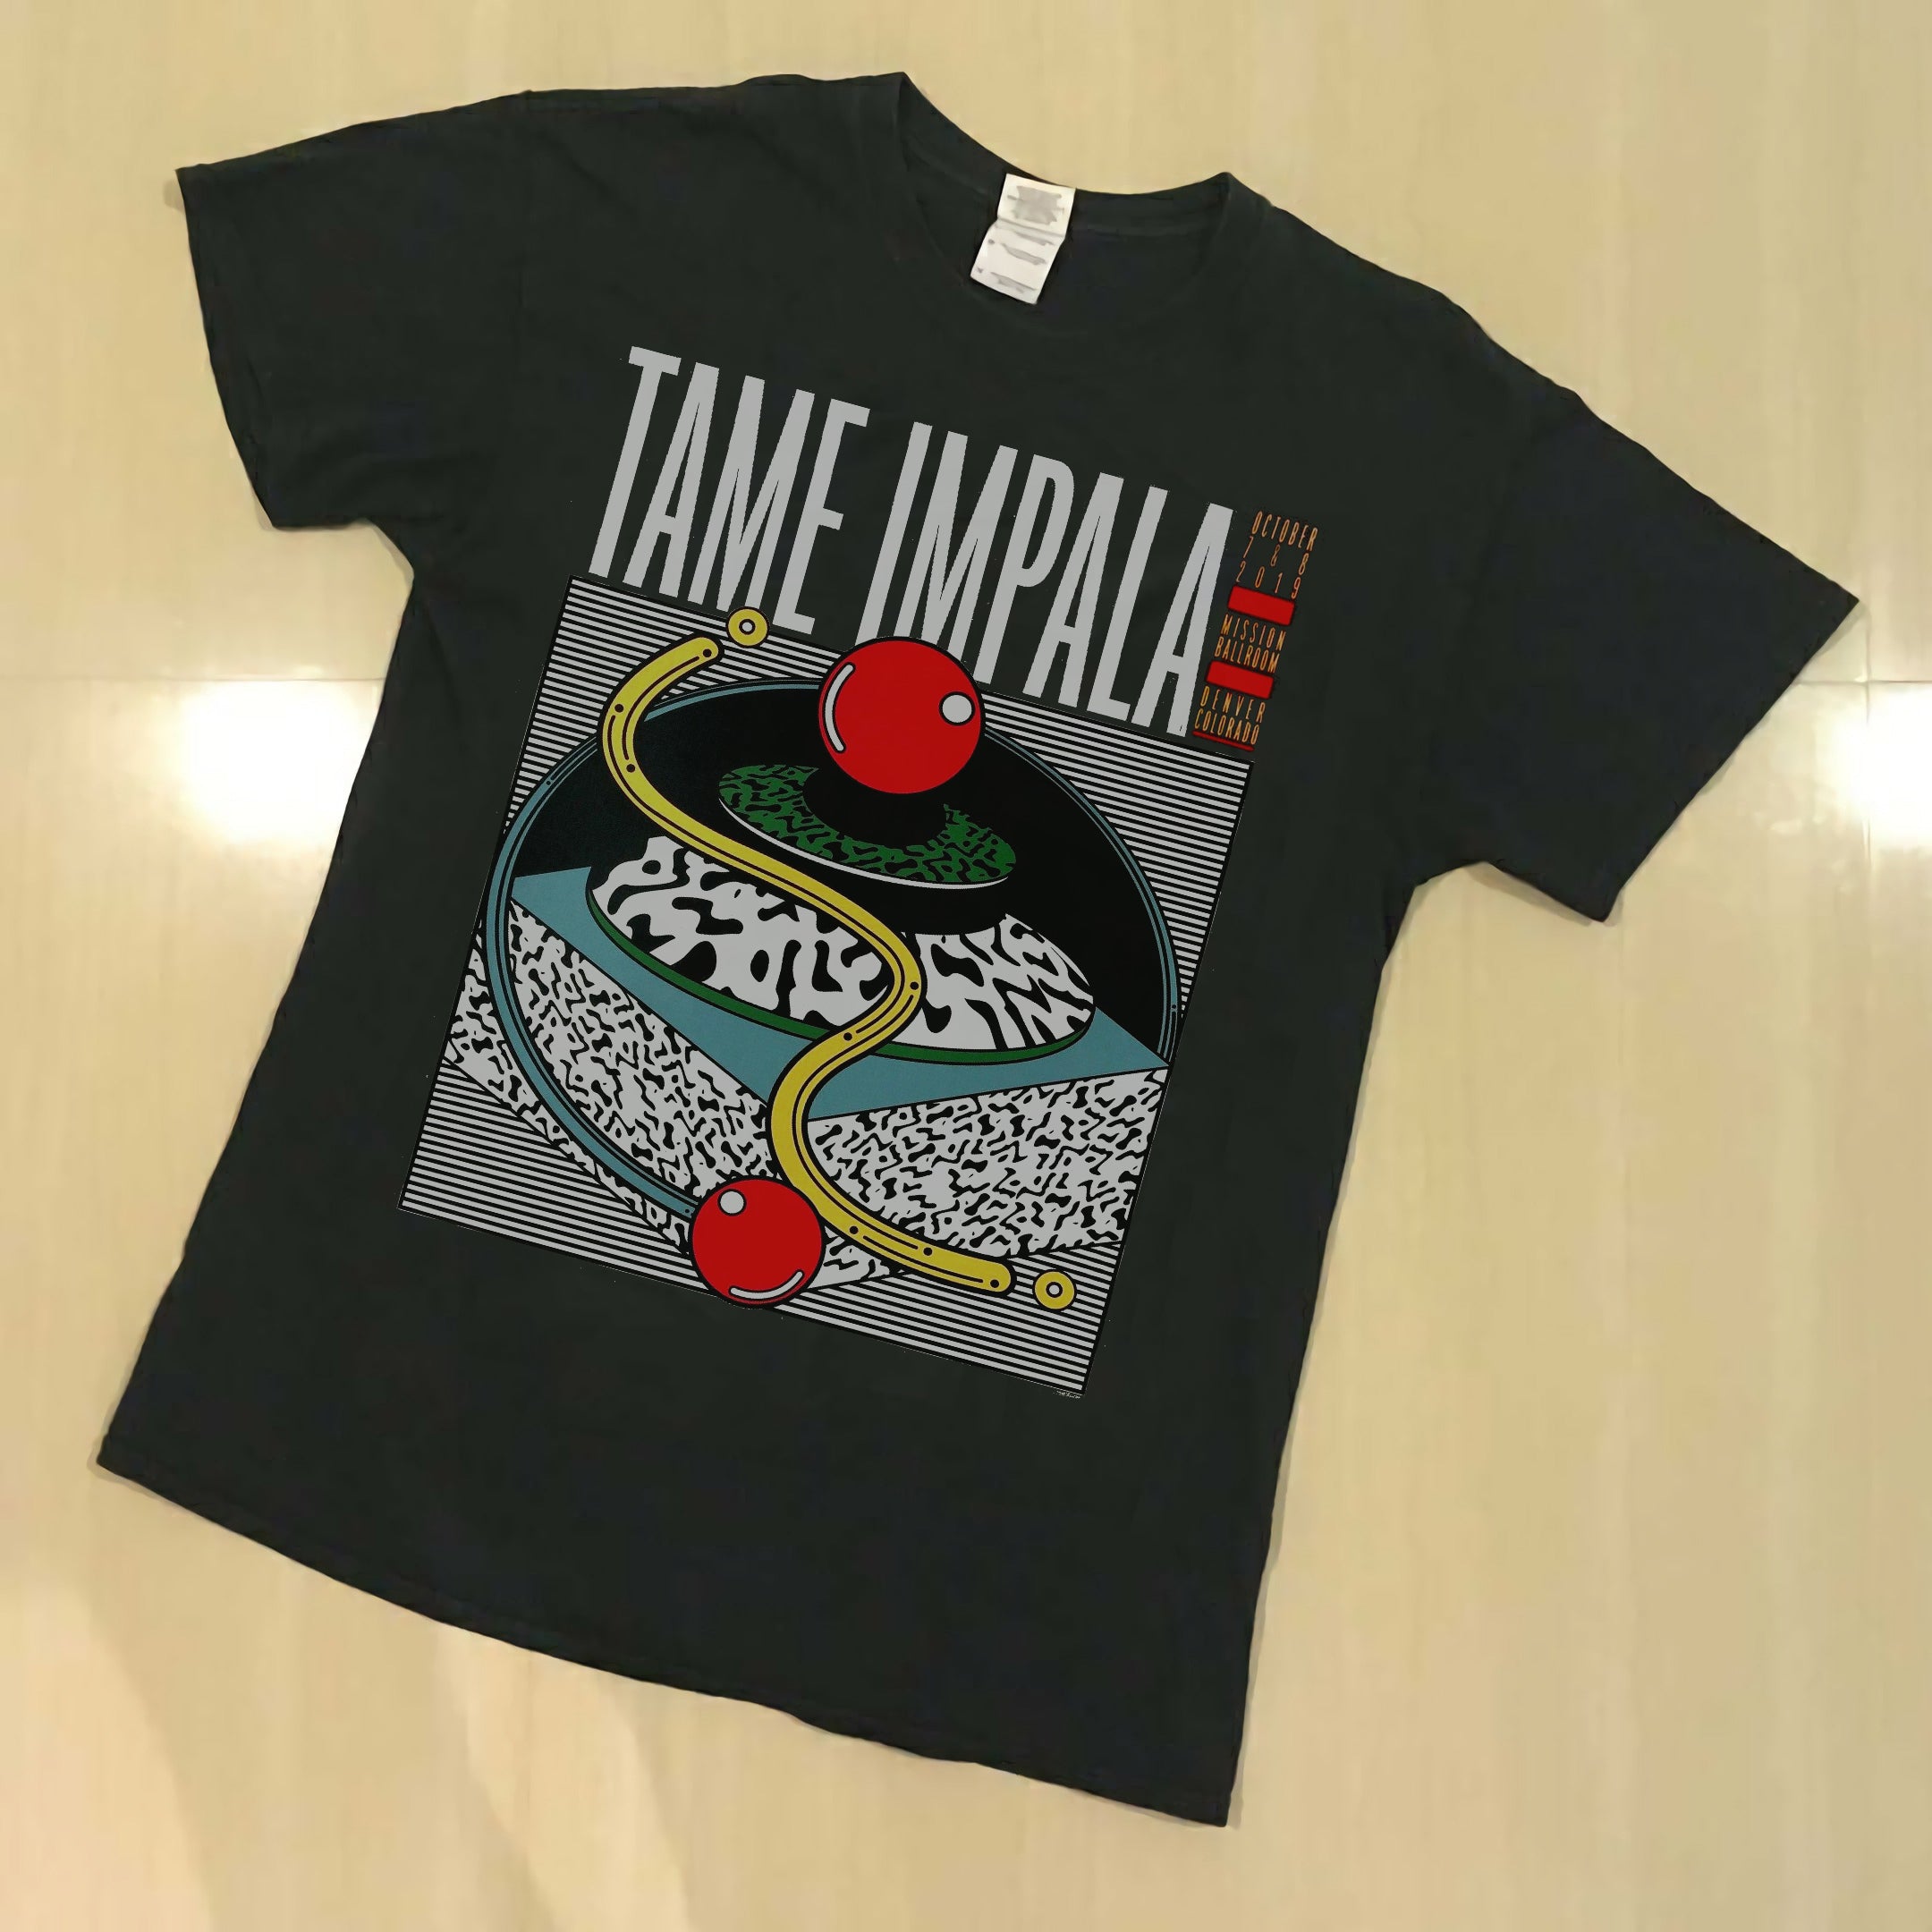 Copy of Tame Impala oktober 2019 Tour shirt